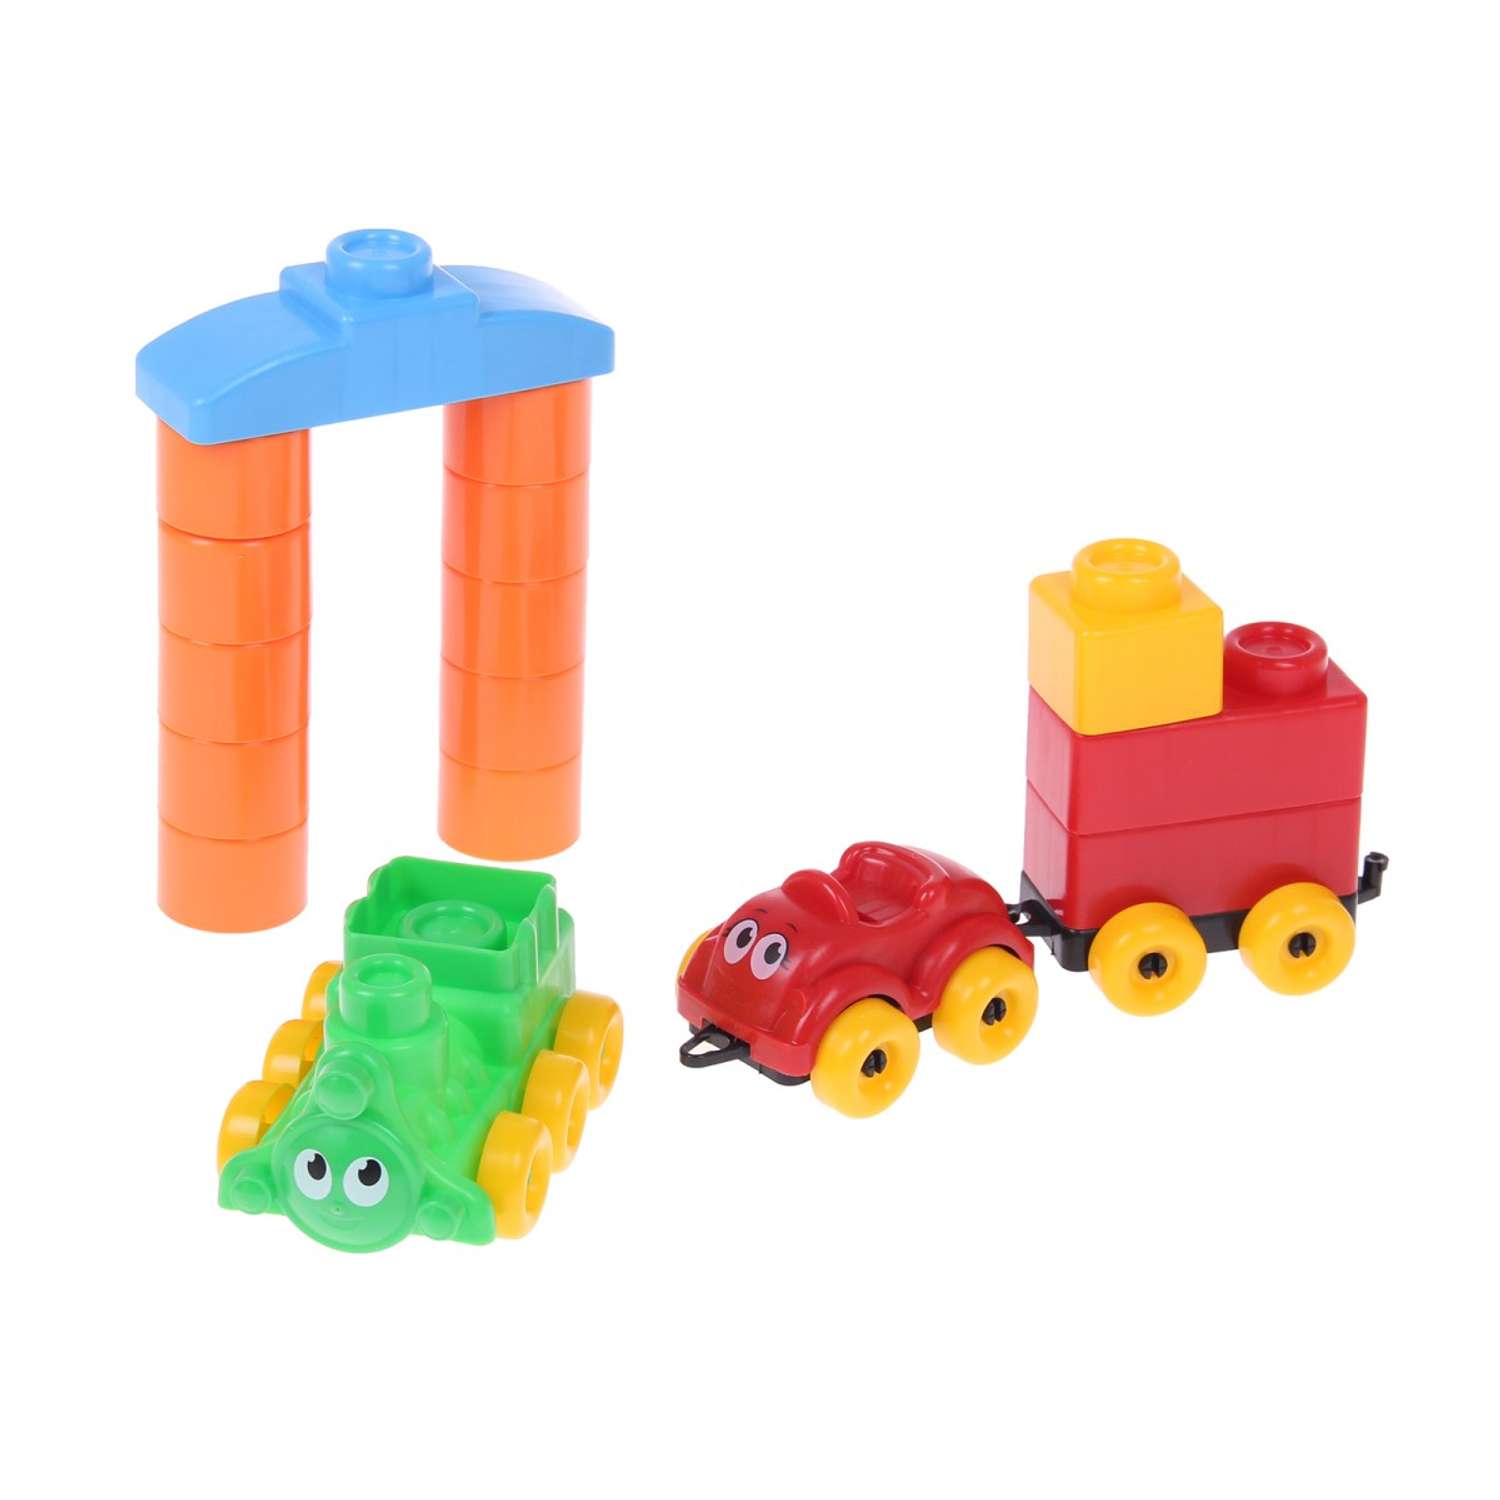 Развивающие игрушки БИПЛАНТ для малышей Конструктор Кноп-Кнопыч 114 деталей + Сортер Кубик логический малый - фото 8